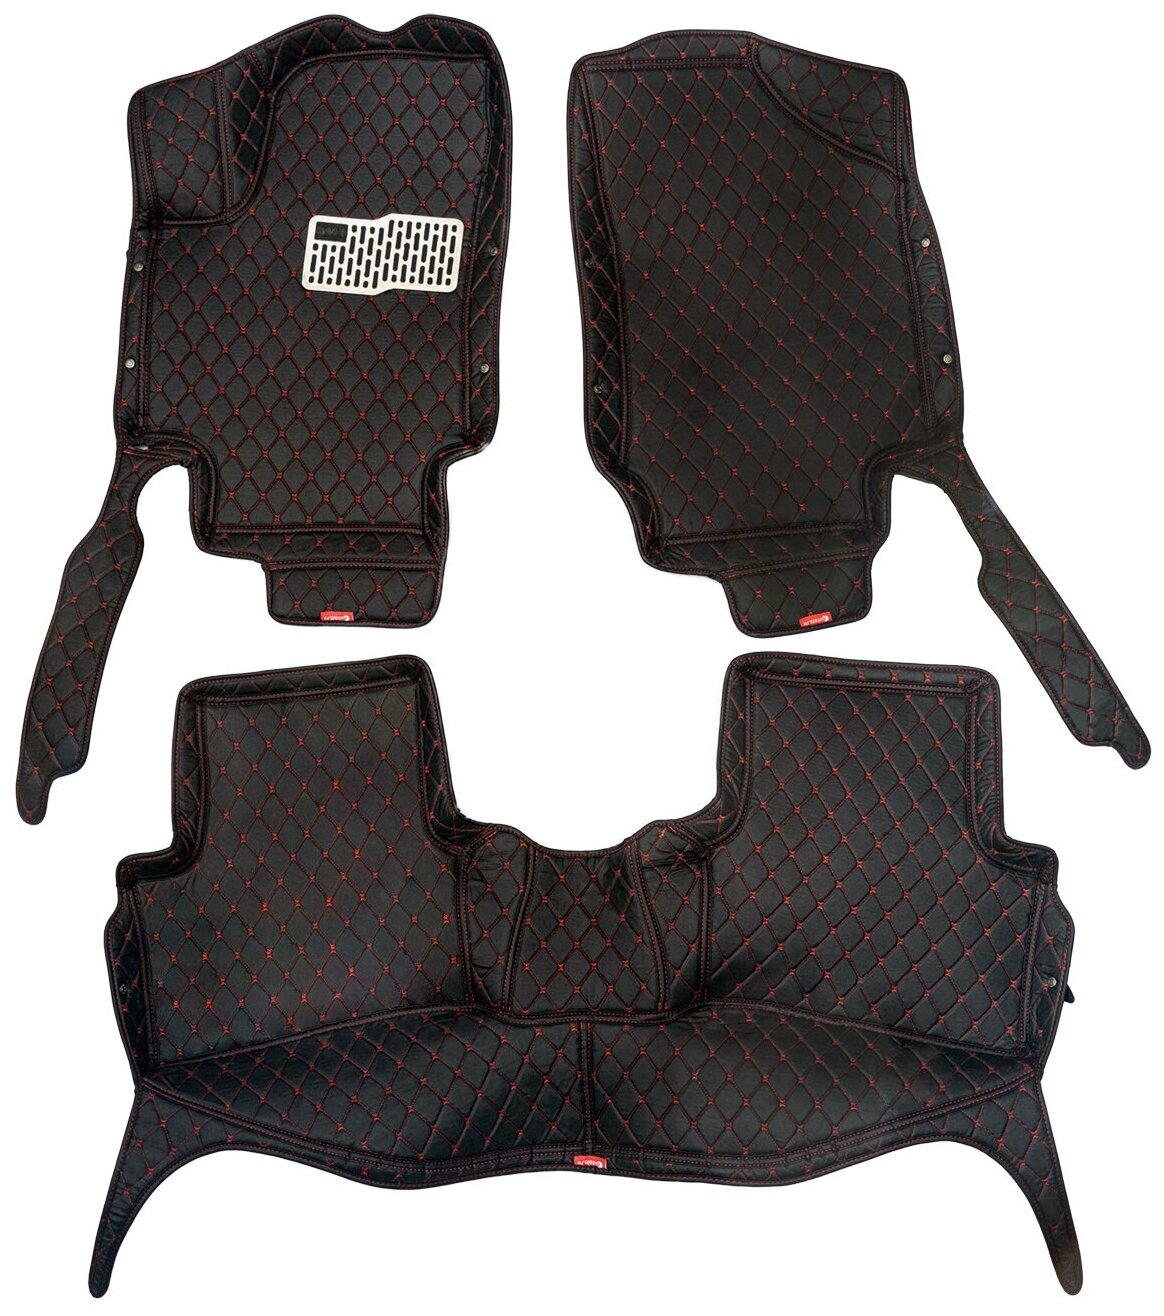 Кожаные 3D коврики Autozs Premium для Kia Optima IV Седан (2015+) черные с красной строчкой / Киа Оптима 4 Седан (2015+) 3Д ковры в автомобиль